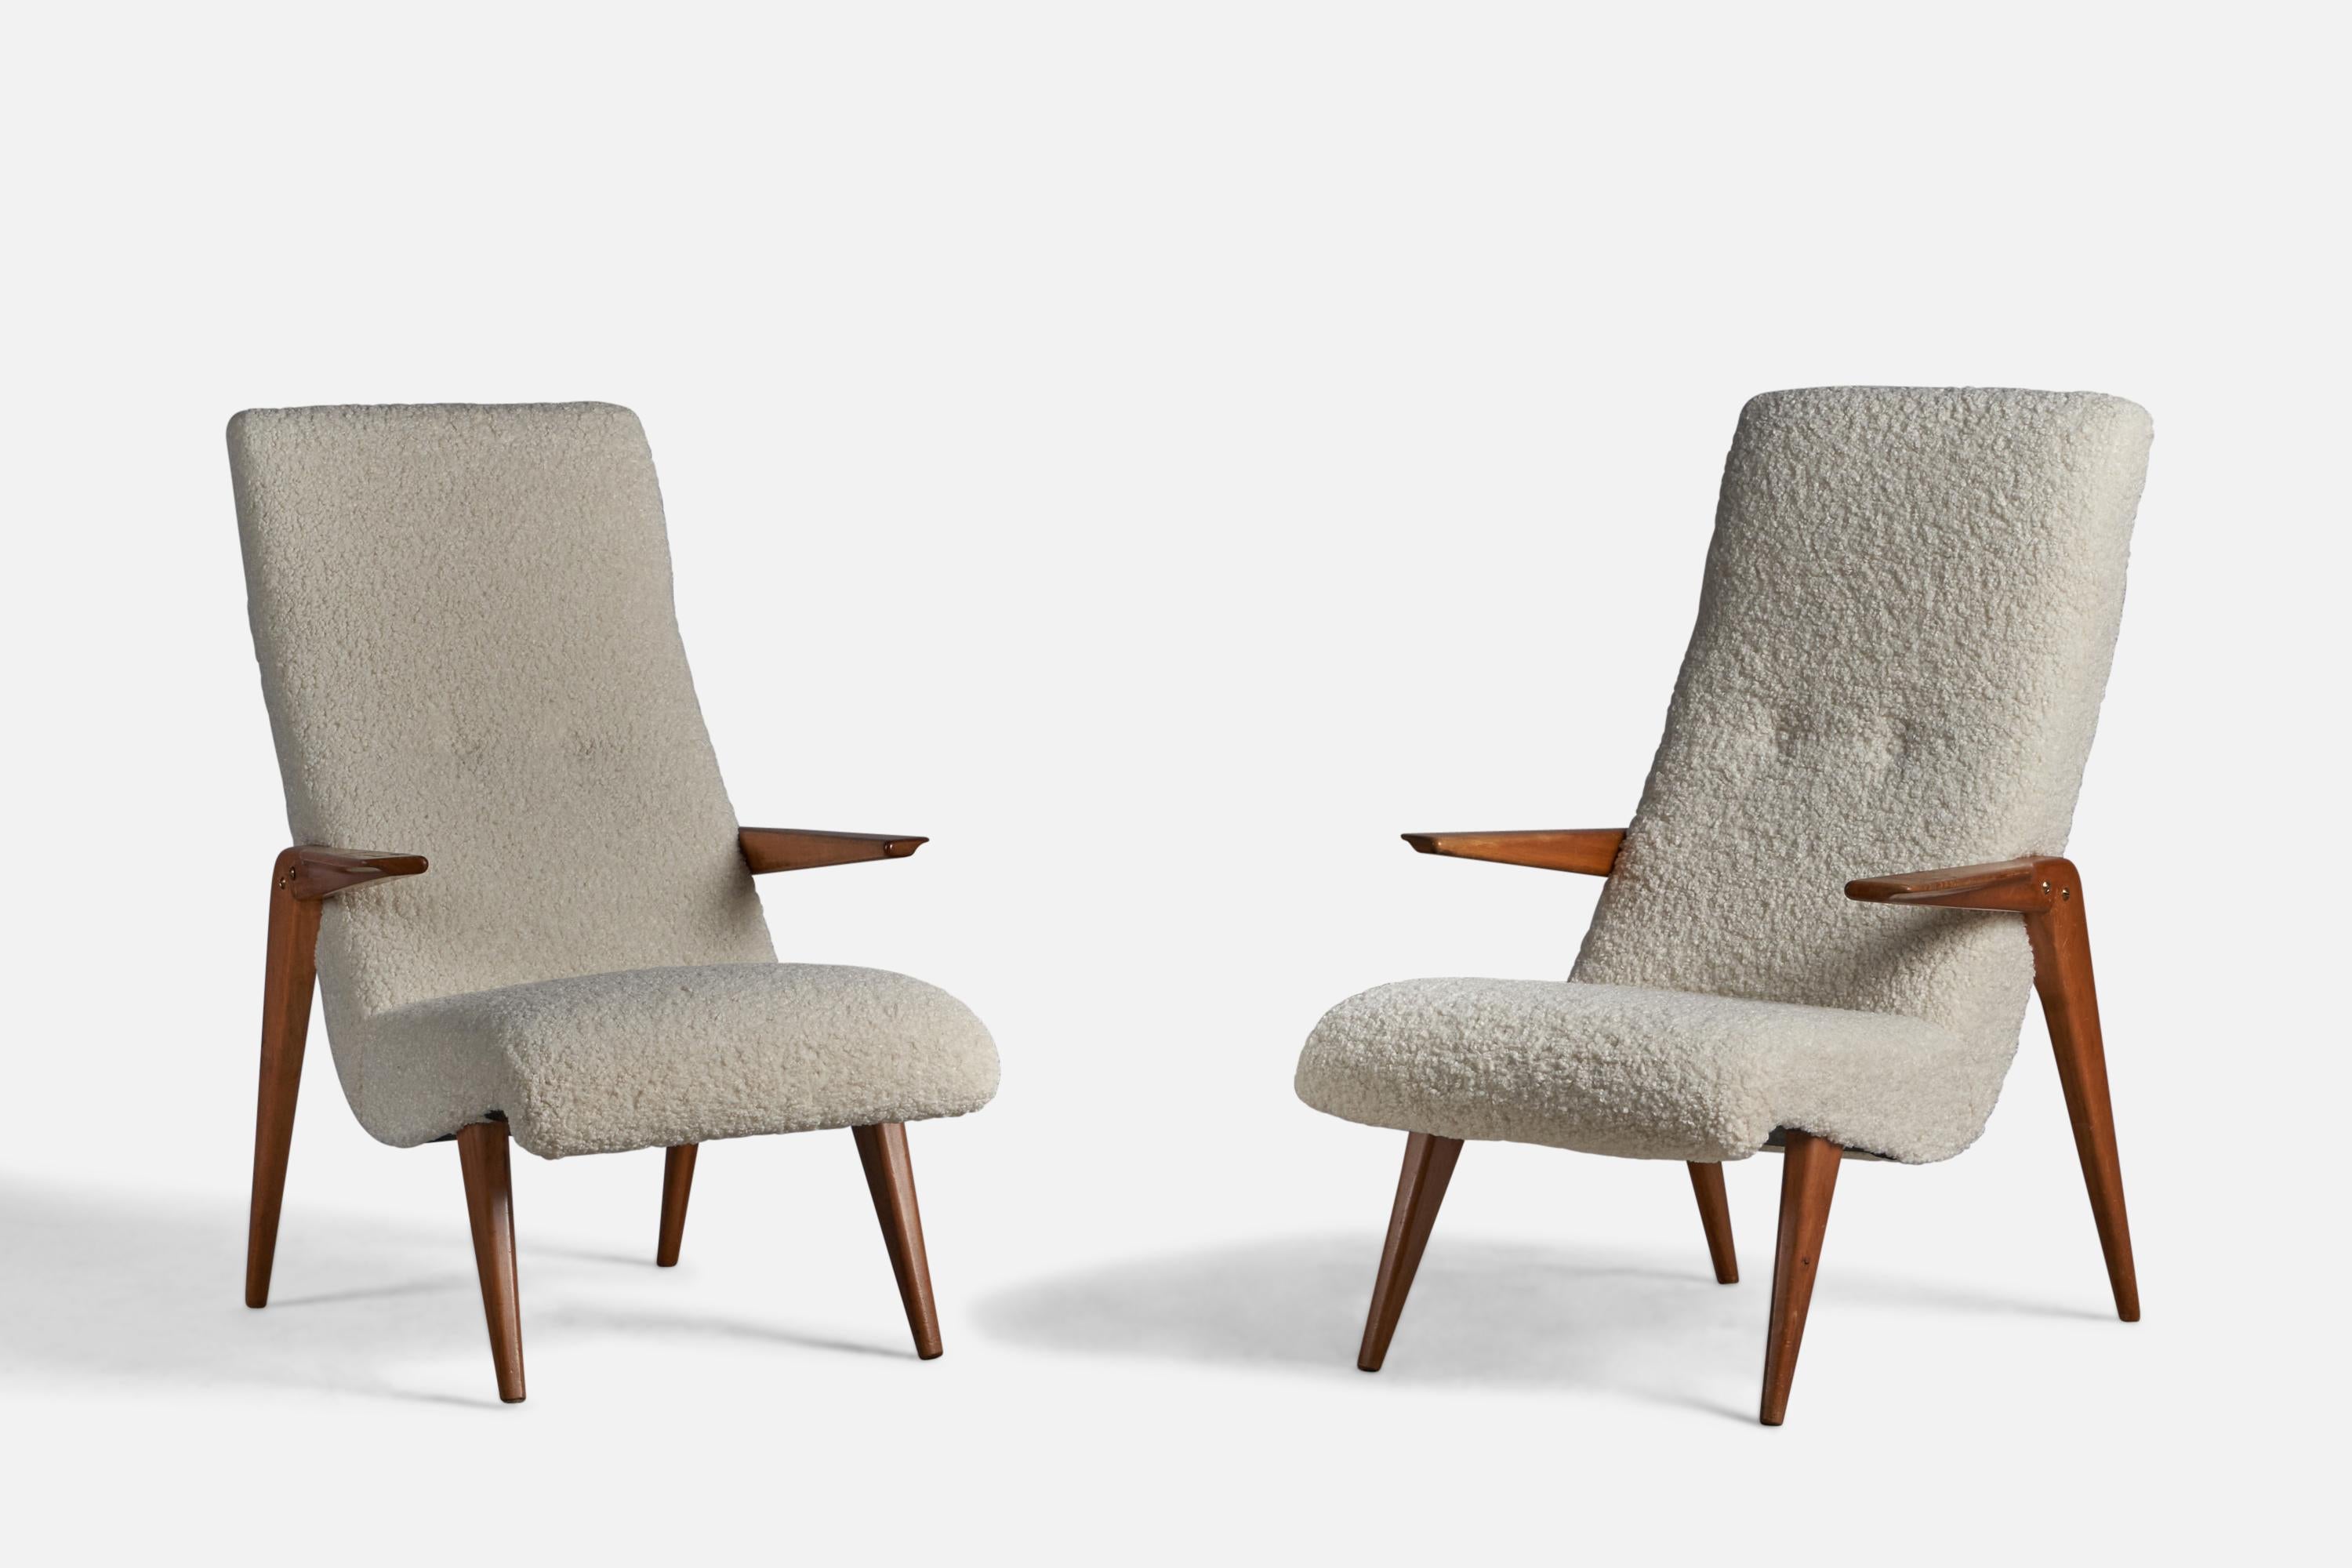 Paire de chaises longues en noyer et tissu, conçues et produites en Italie, années 1950.

Hauteur d'assise de 15,5 pouces
 